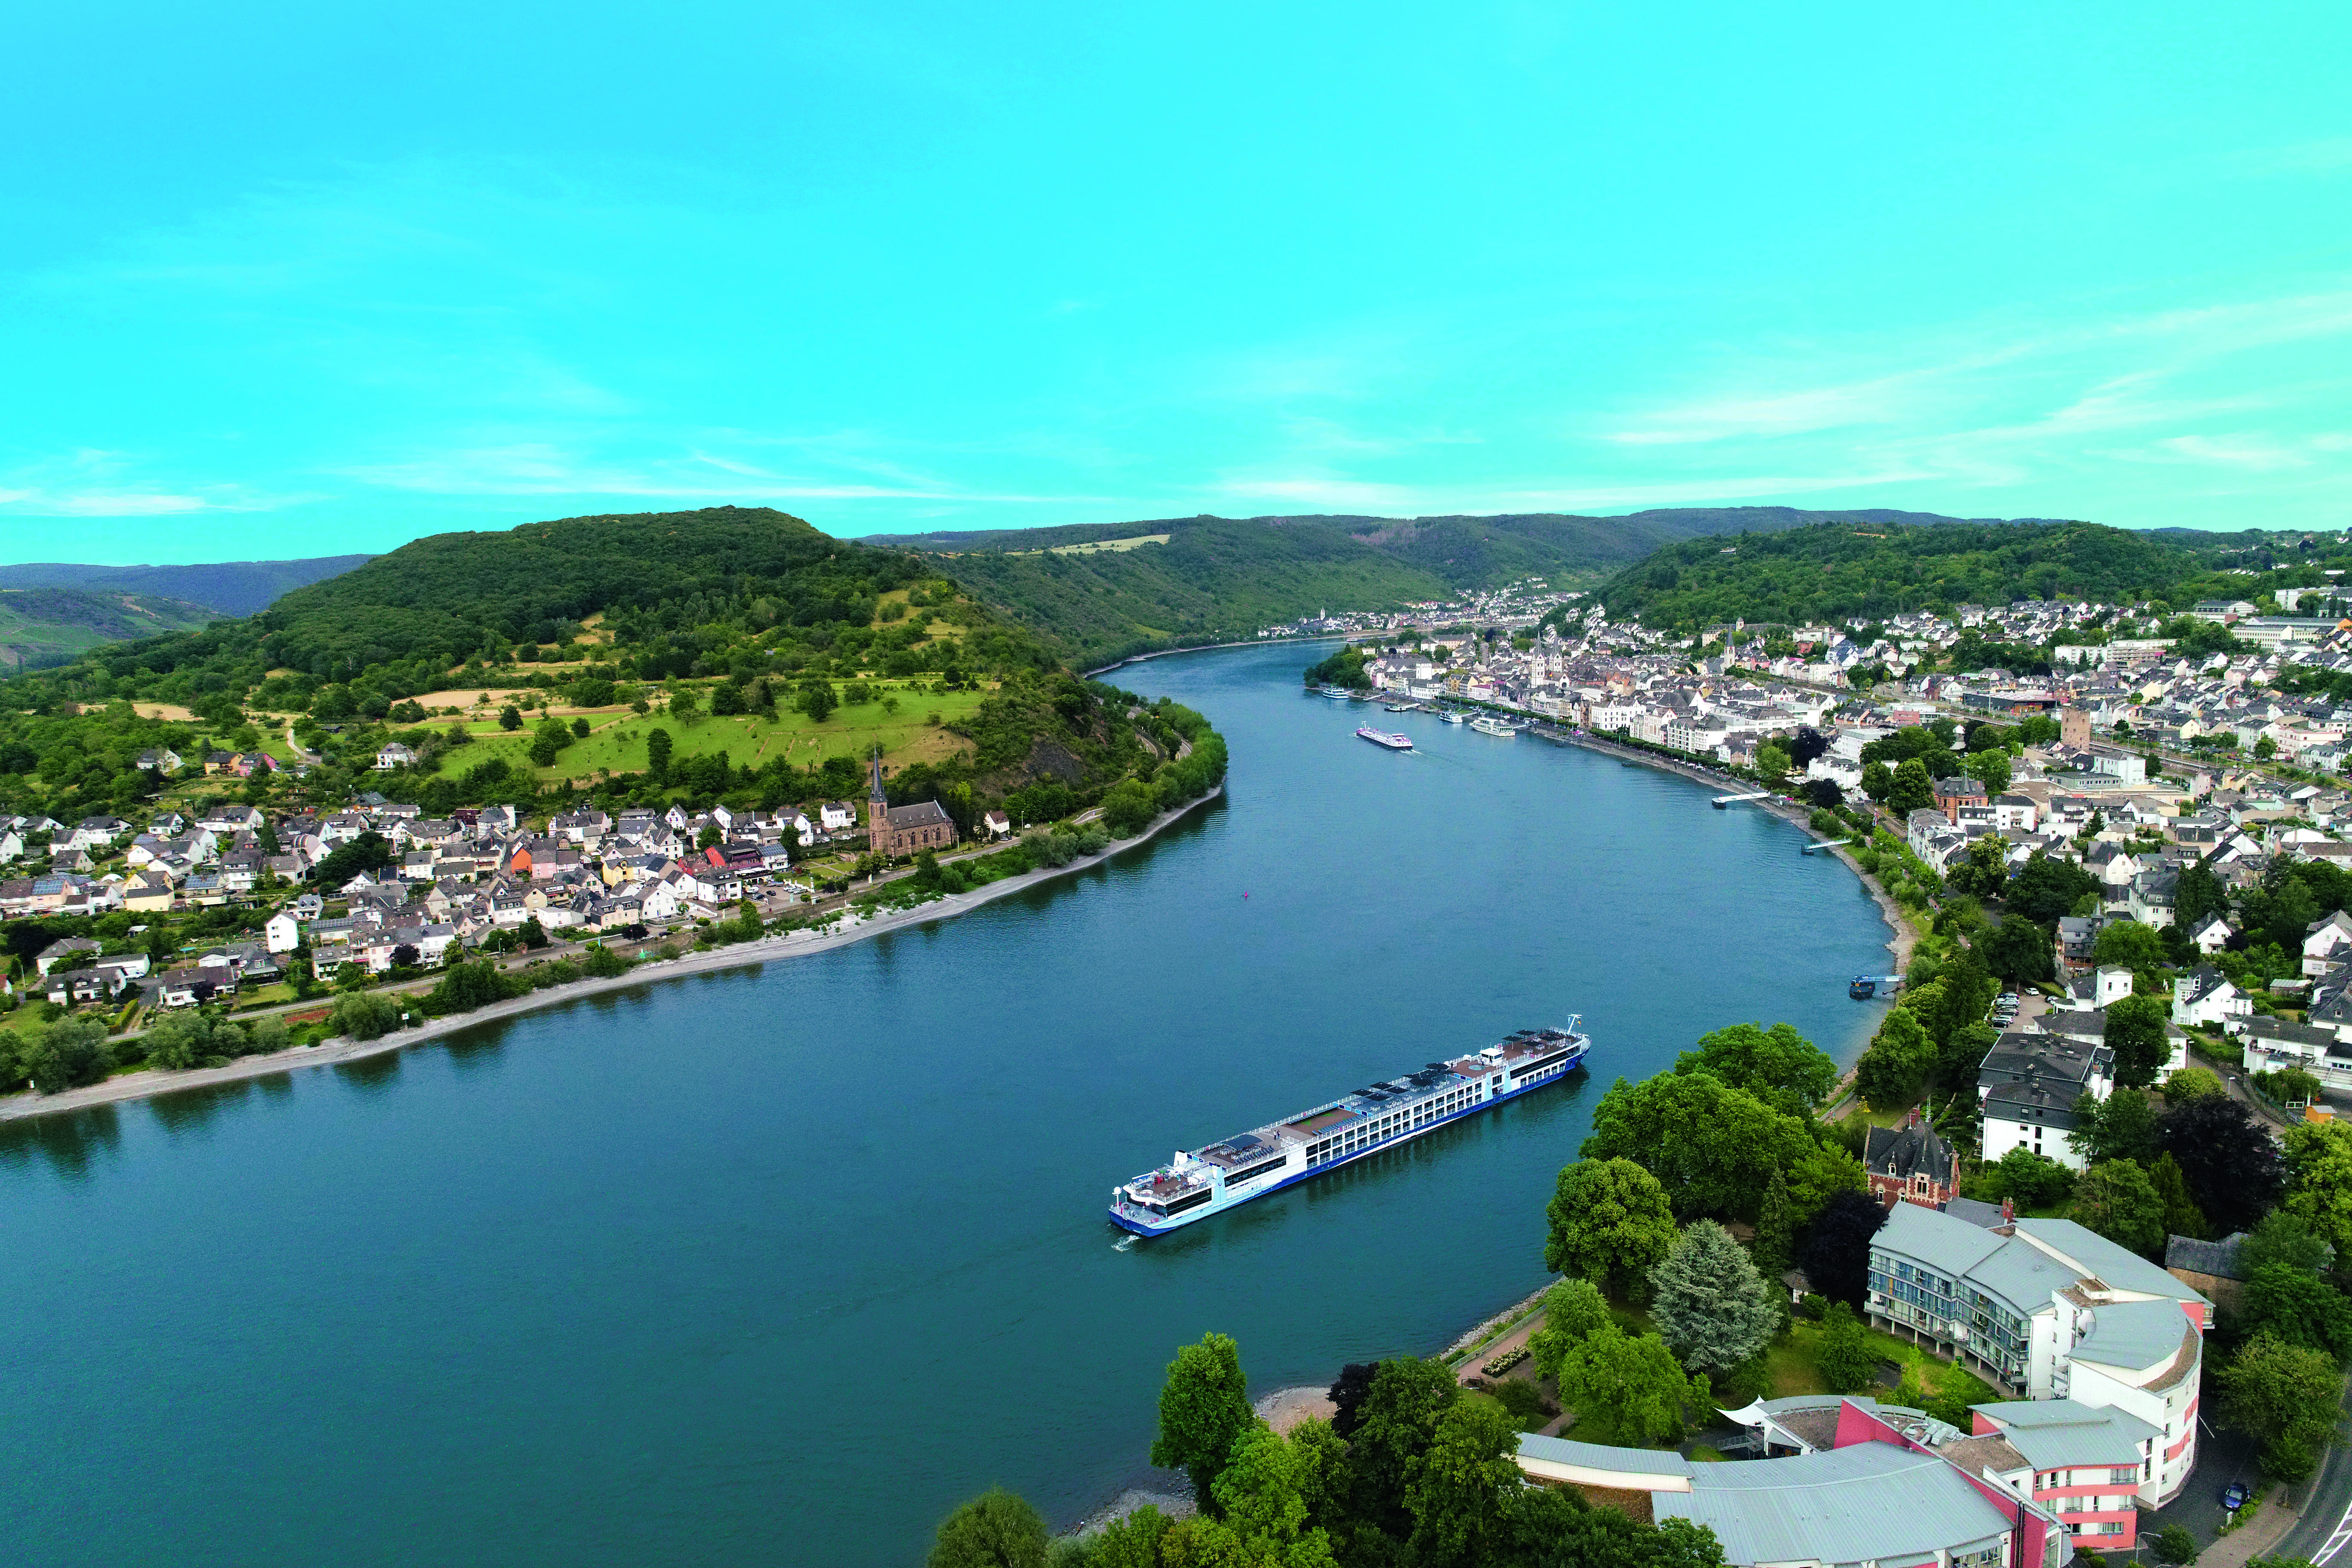 A TUI River Cruise ship in Europe (Photo/TUI River Cruises)